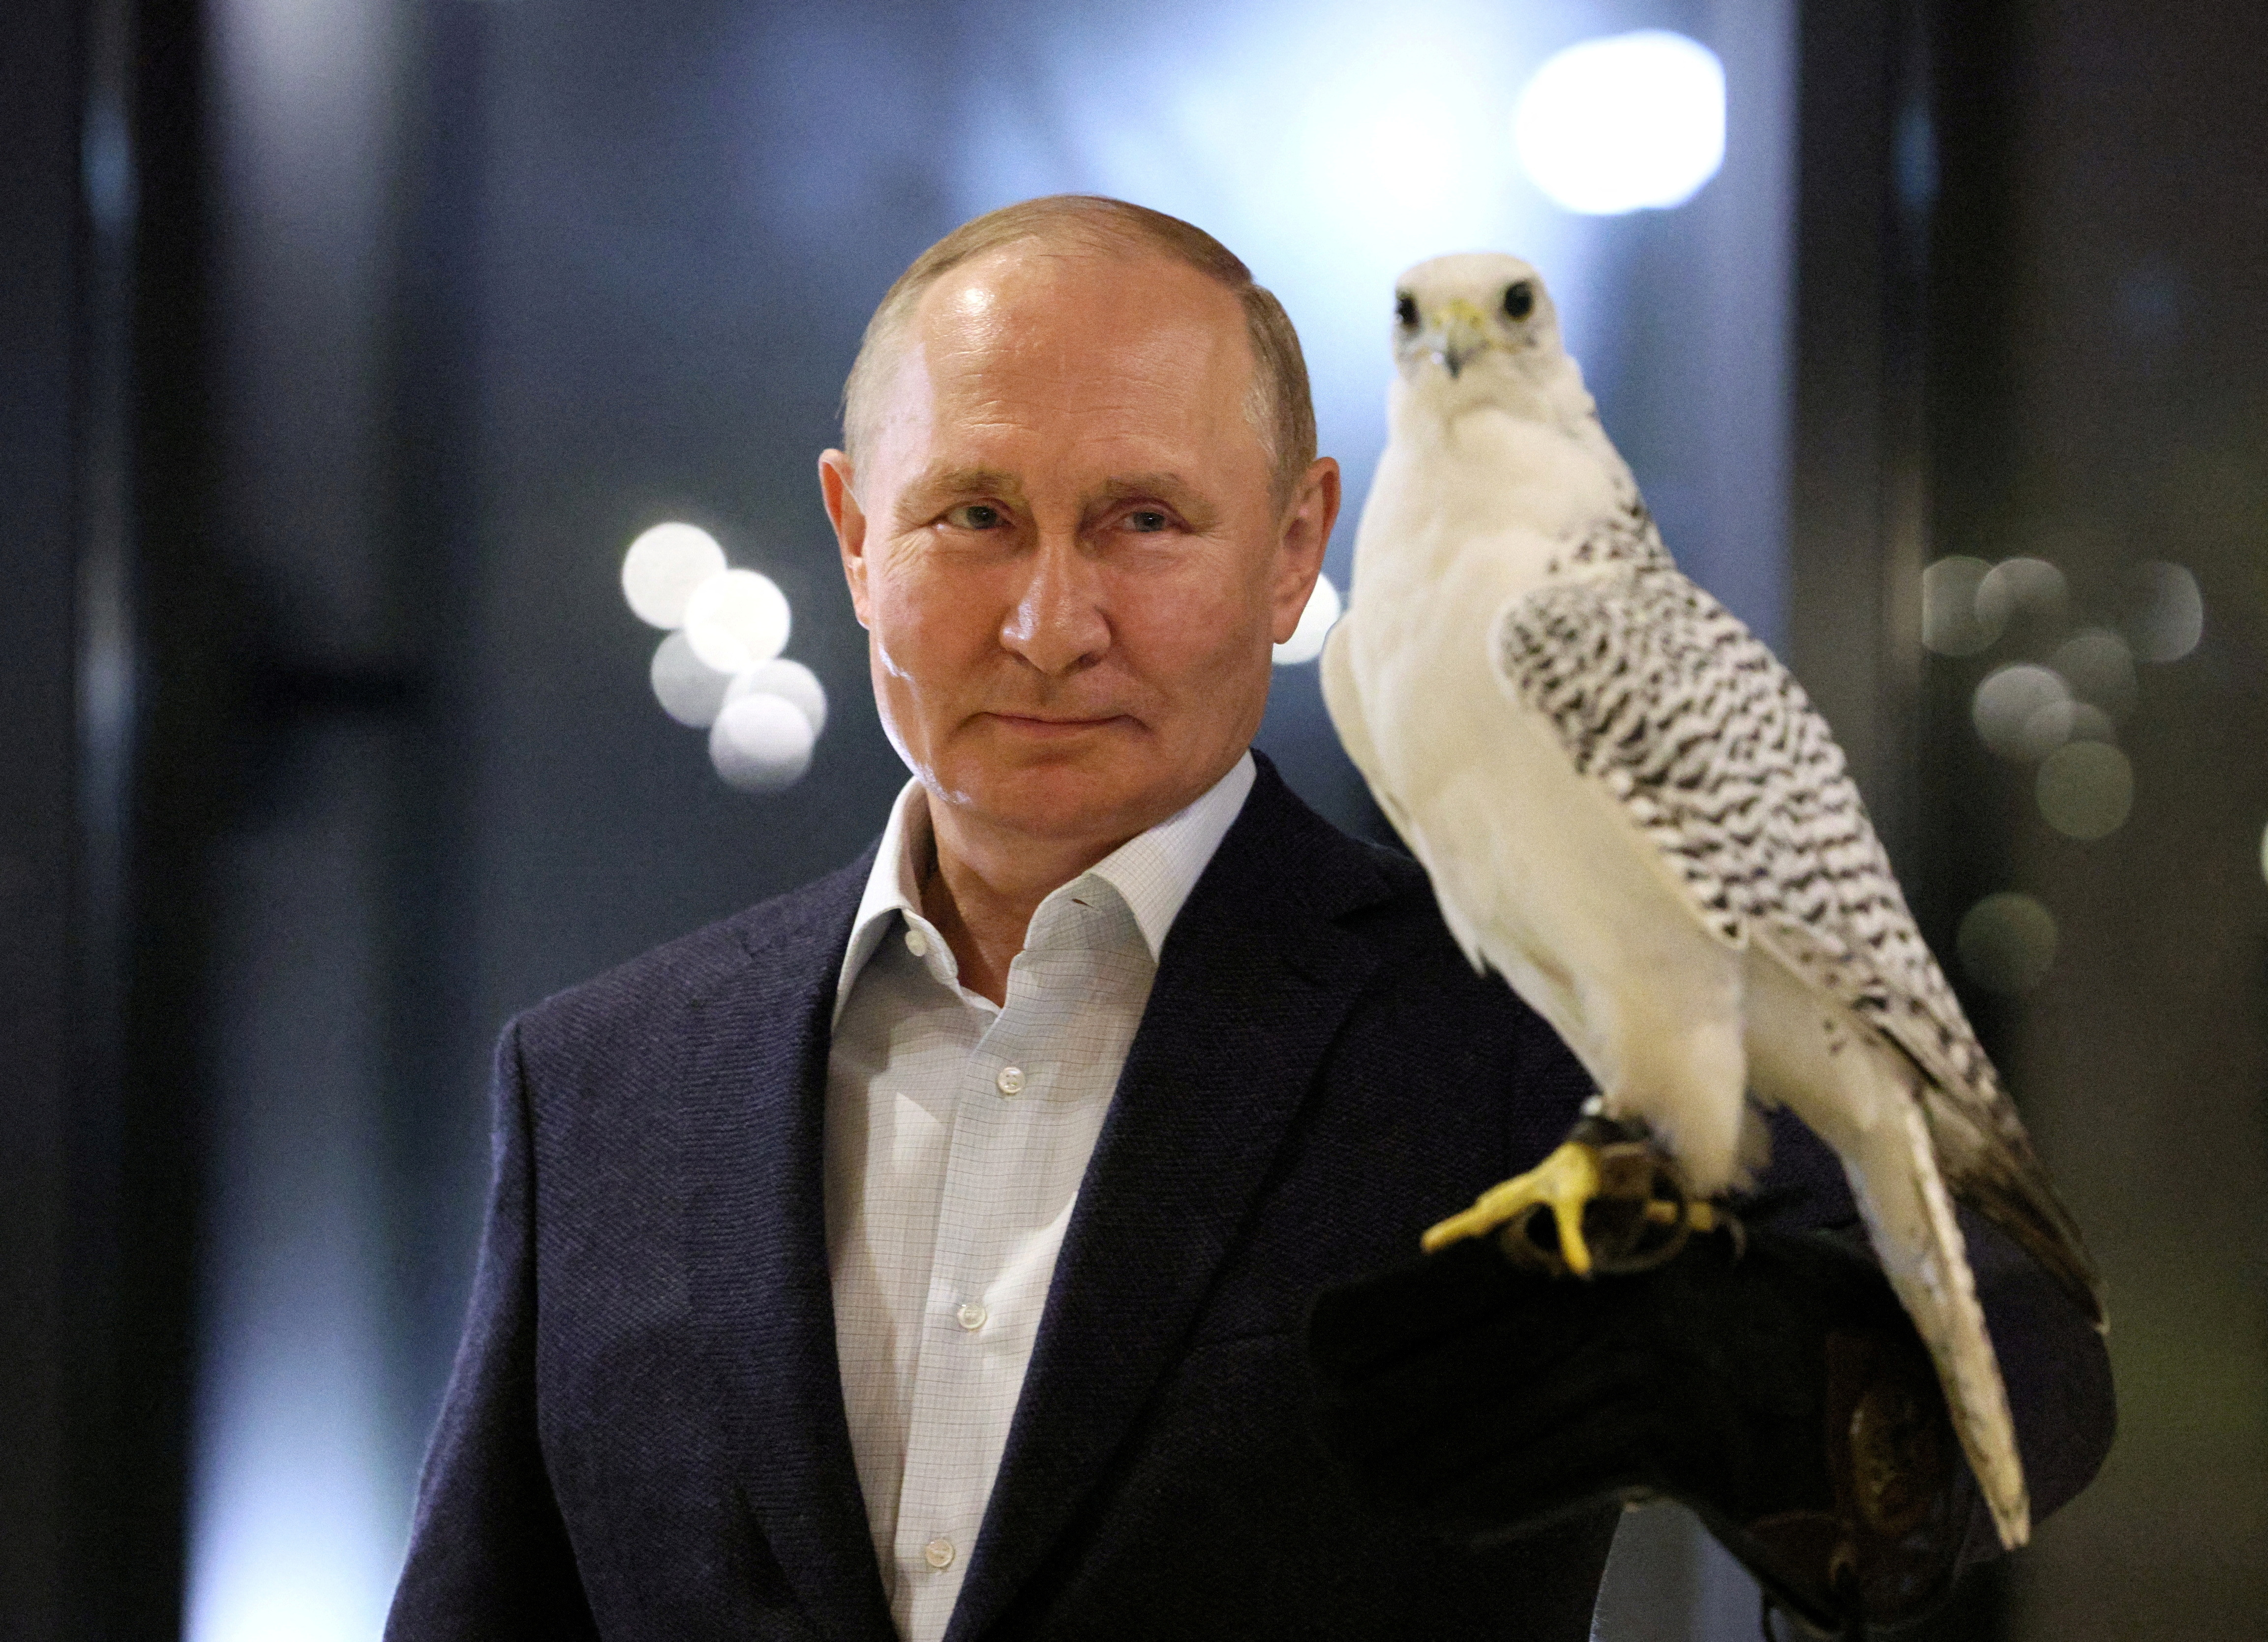 El jefe del régimen ruso, Vladímir Putin, asiste a una reunión con ornitólogos y miembros del centro de cría de halcones de Kamchatka, Rusia, este lunes 5 de septiembre de 2022. La economía rusa se enfrenta a tiempos muy severos por las sanciones, de acuerdo a documentos secretos del Kremlin (Reuters)